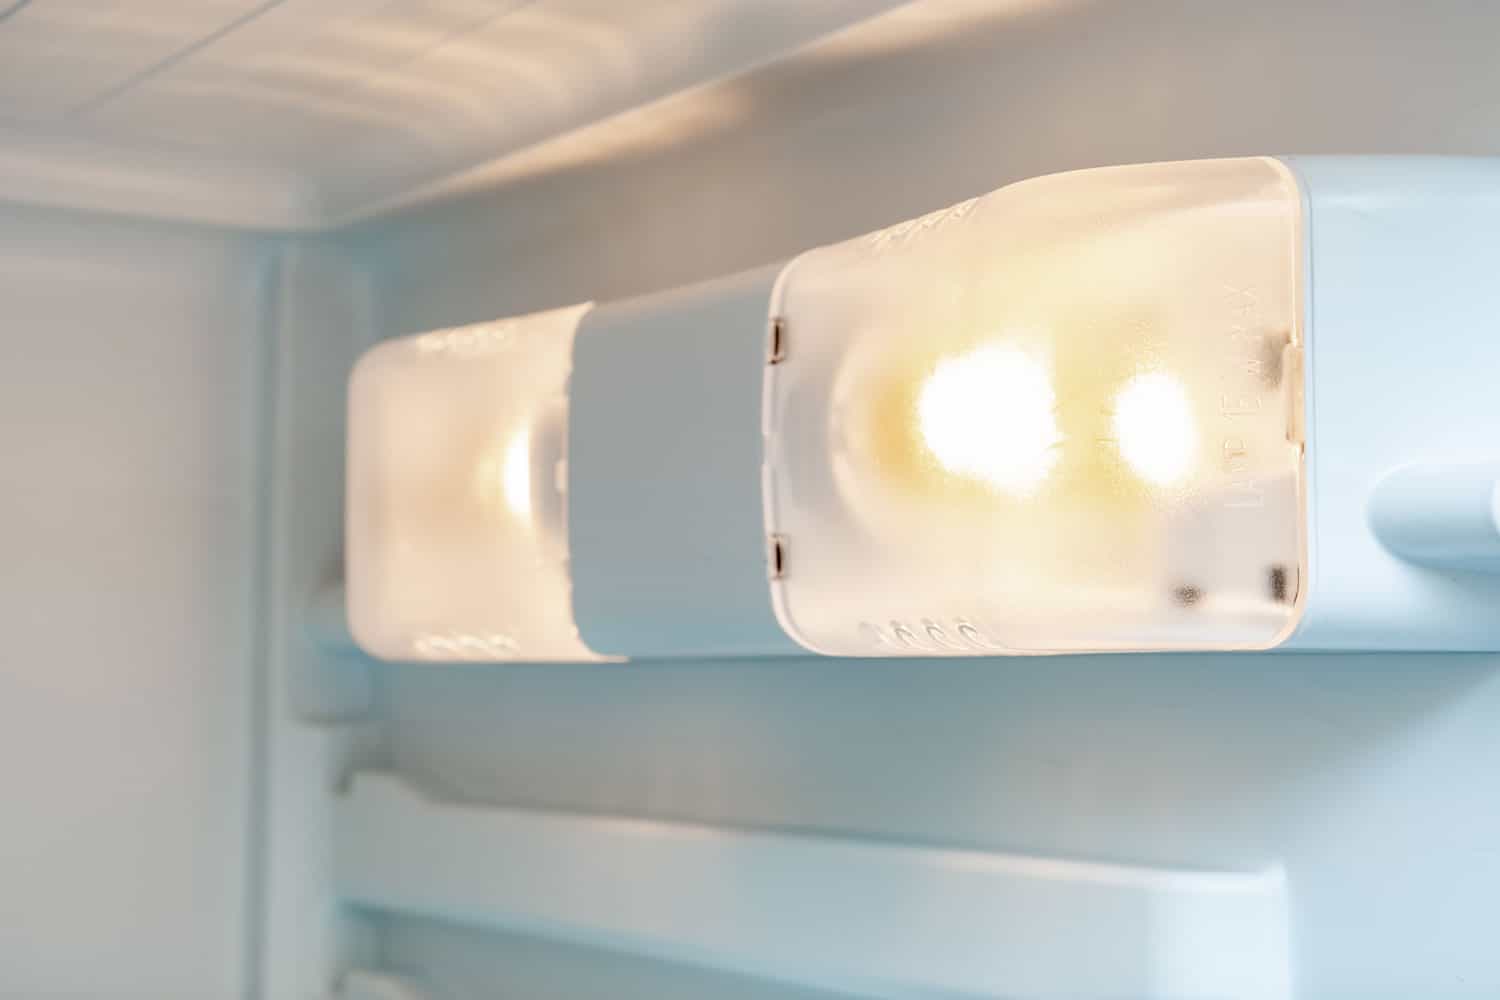 冰箱里有一盏灯，冰箱关闭时，门打开时，一盏灯会自动打开，